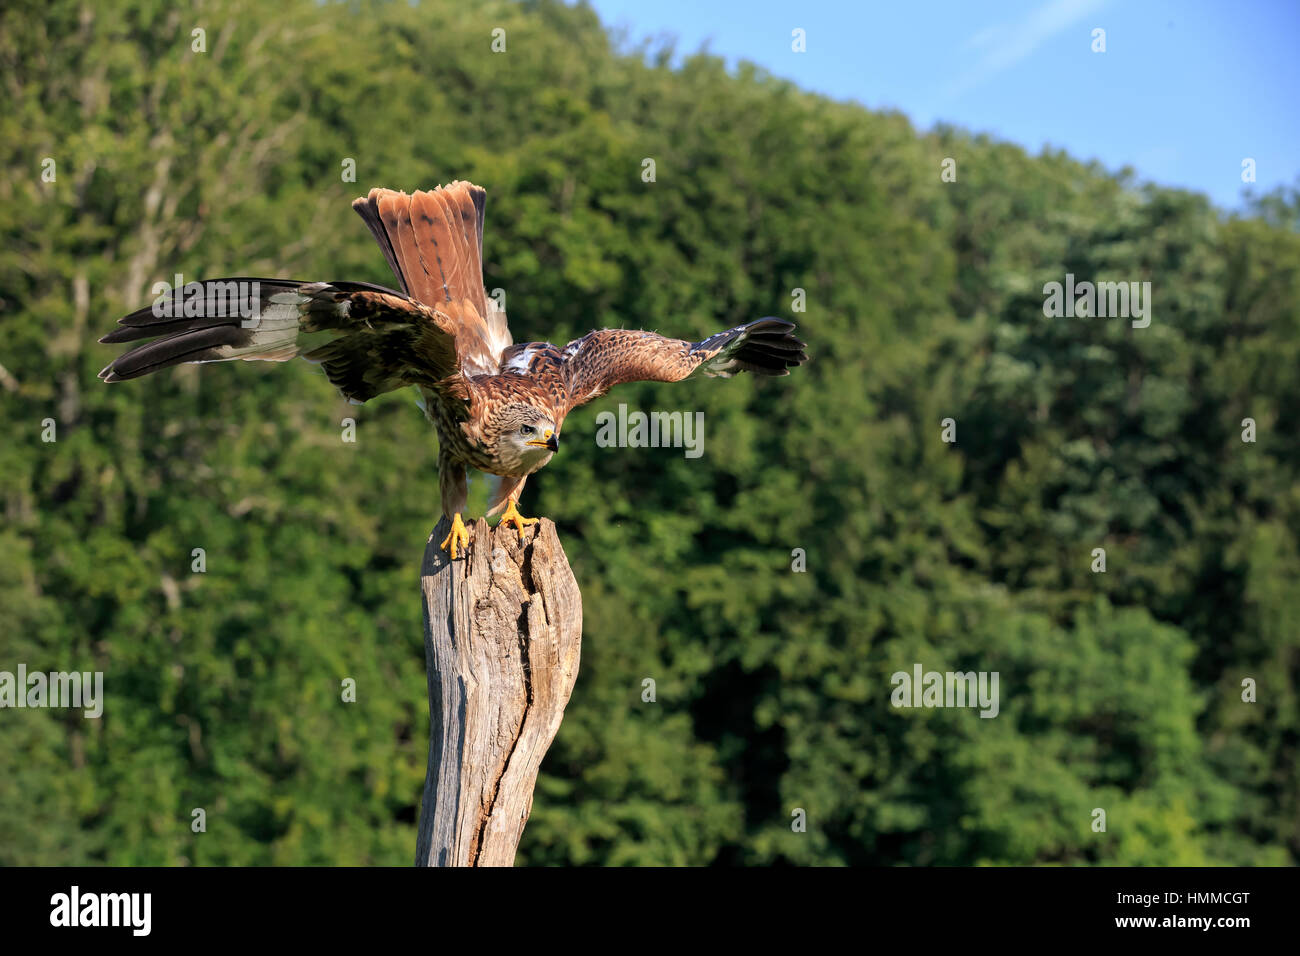 Red Kite, (Milvus milvus), adult on branch spreads Wings, Pelm, Kasselburg, Eifel, Germany, Europe Stock Photo